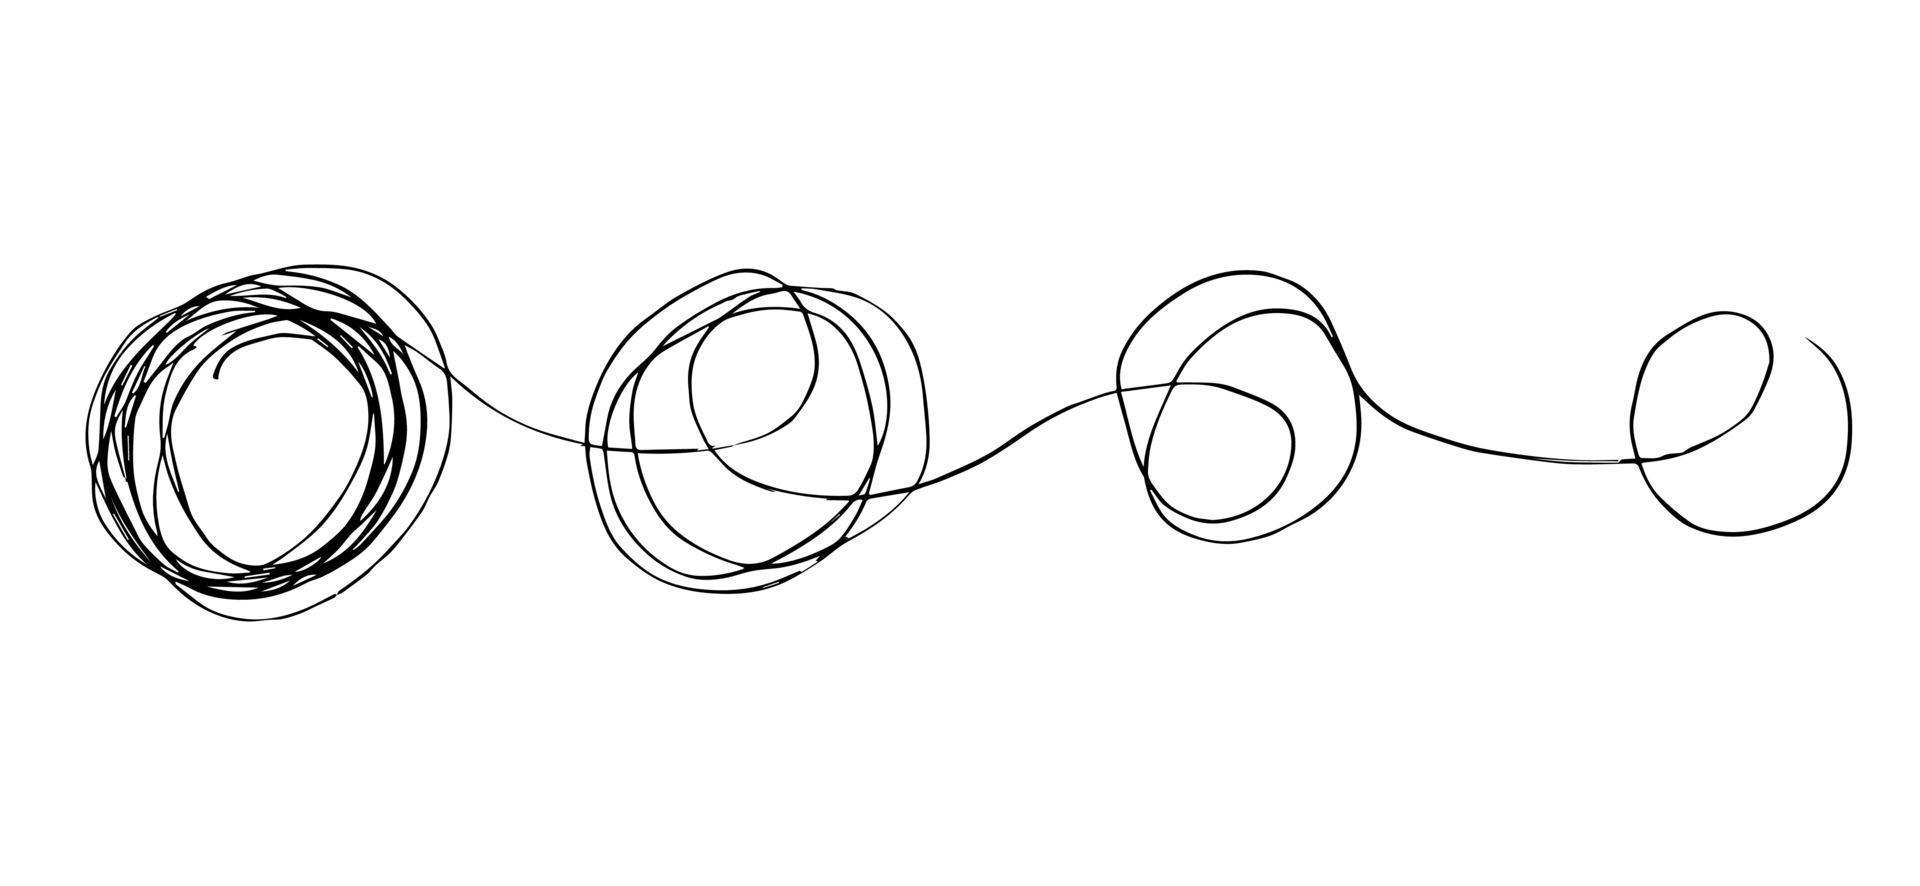 mão desenhada de rabisco sketch.abstract rabisco emaranhado, padrão de doodle de caos. ilustração vetorial isolada no fundo branco vetor